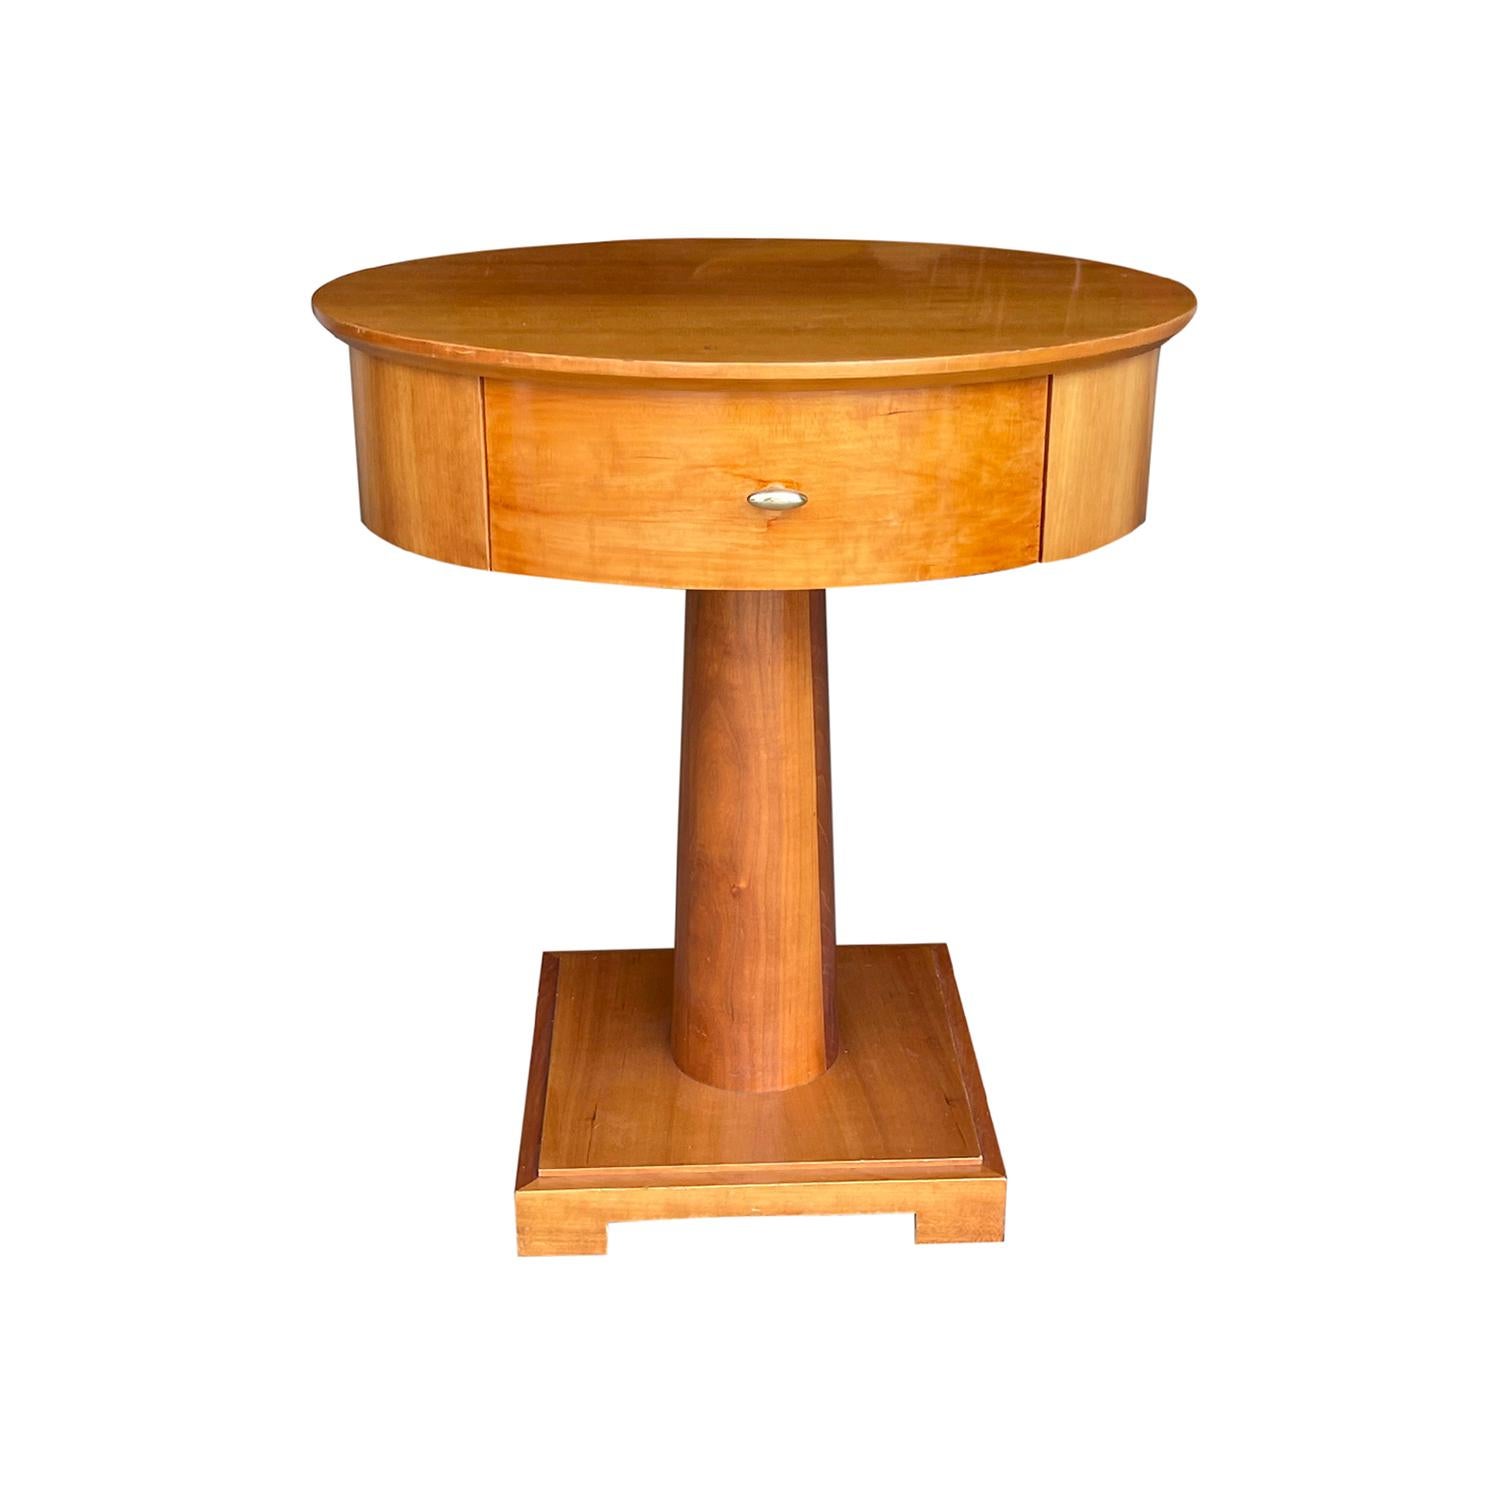 Ancienne table de chevet suédoise à un tiroir, tirette en laiton poli, en bois de cerisier partiellement plaqué et travaillé à la main, conçue par Mobil Living in Design pour le Grand Hotel de Stockholm, étiquetée sur la base, en bon état. La table